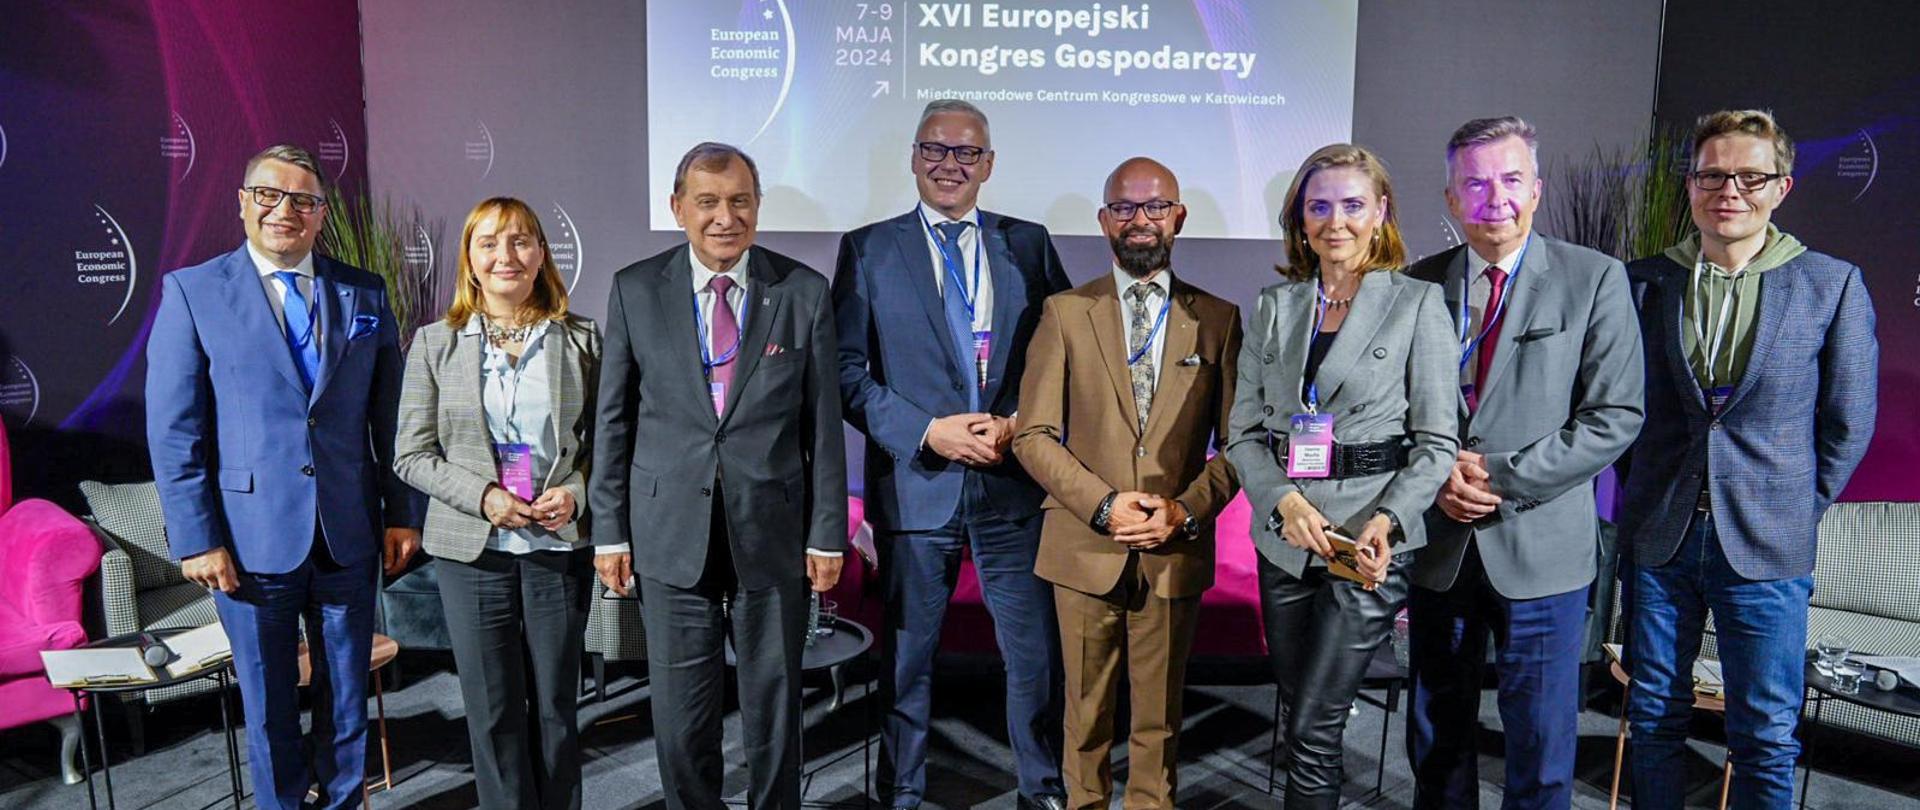 Pod fioletową ścianą z napisem XVI Europejski Kongres Gospodarczy stoi w szeregu osiem osób, minister Wieczorek drugi od prawej.